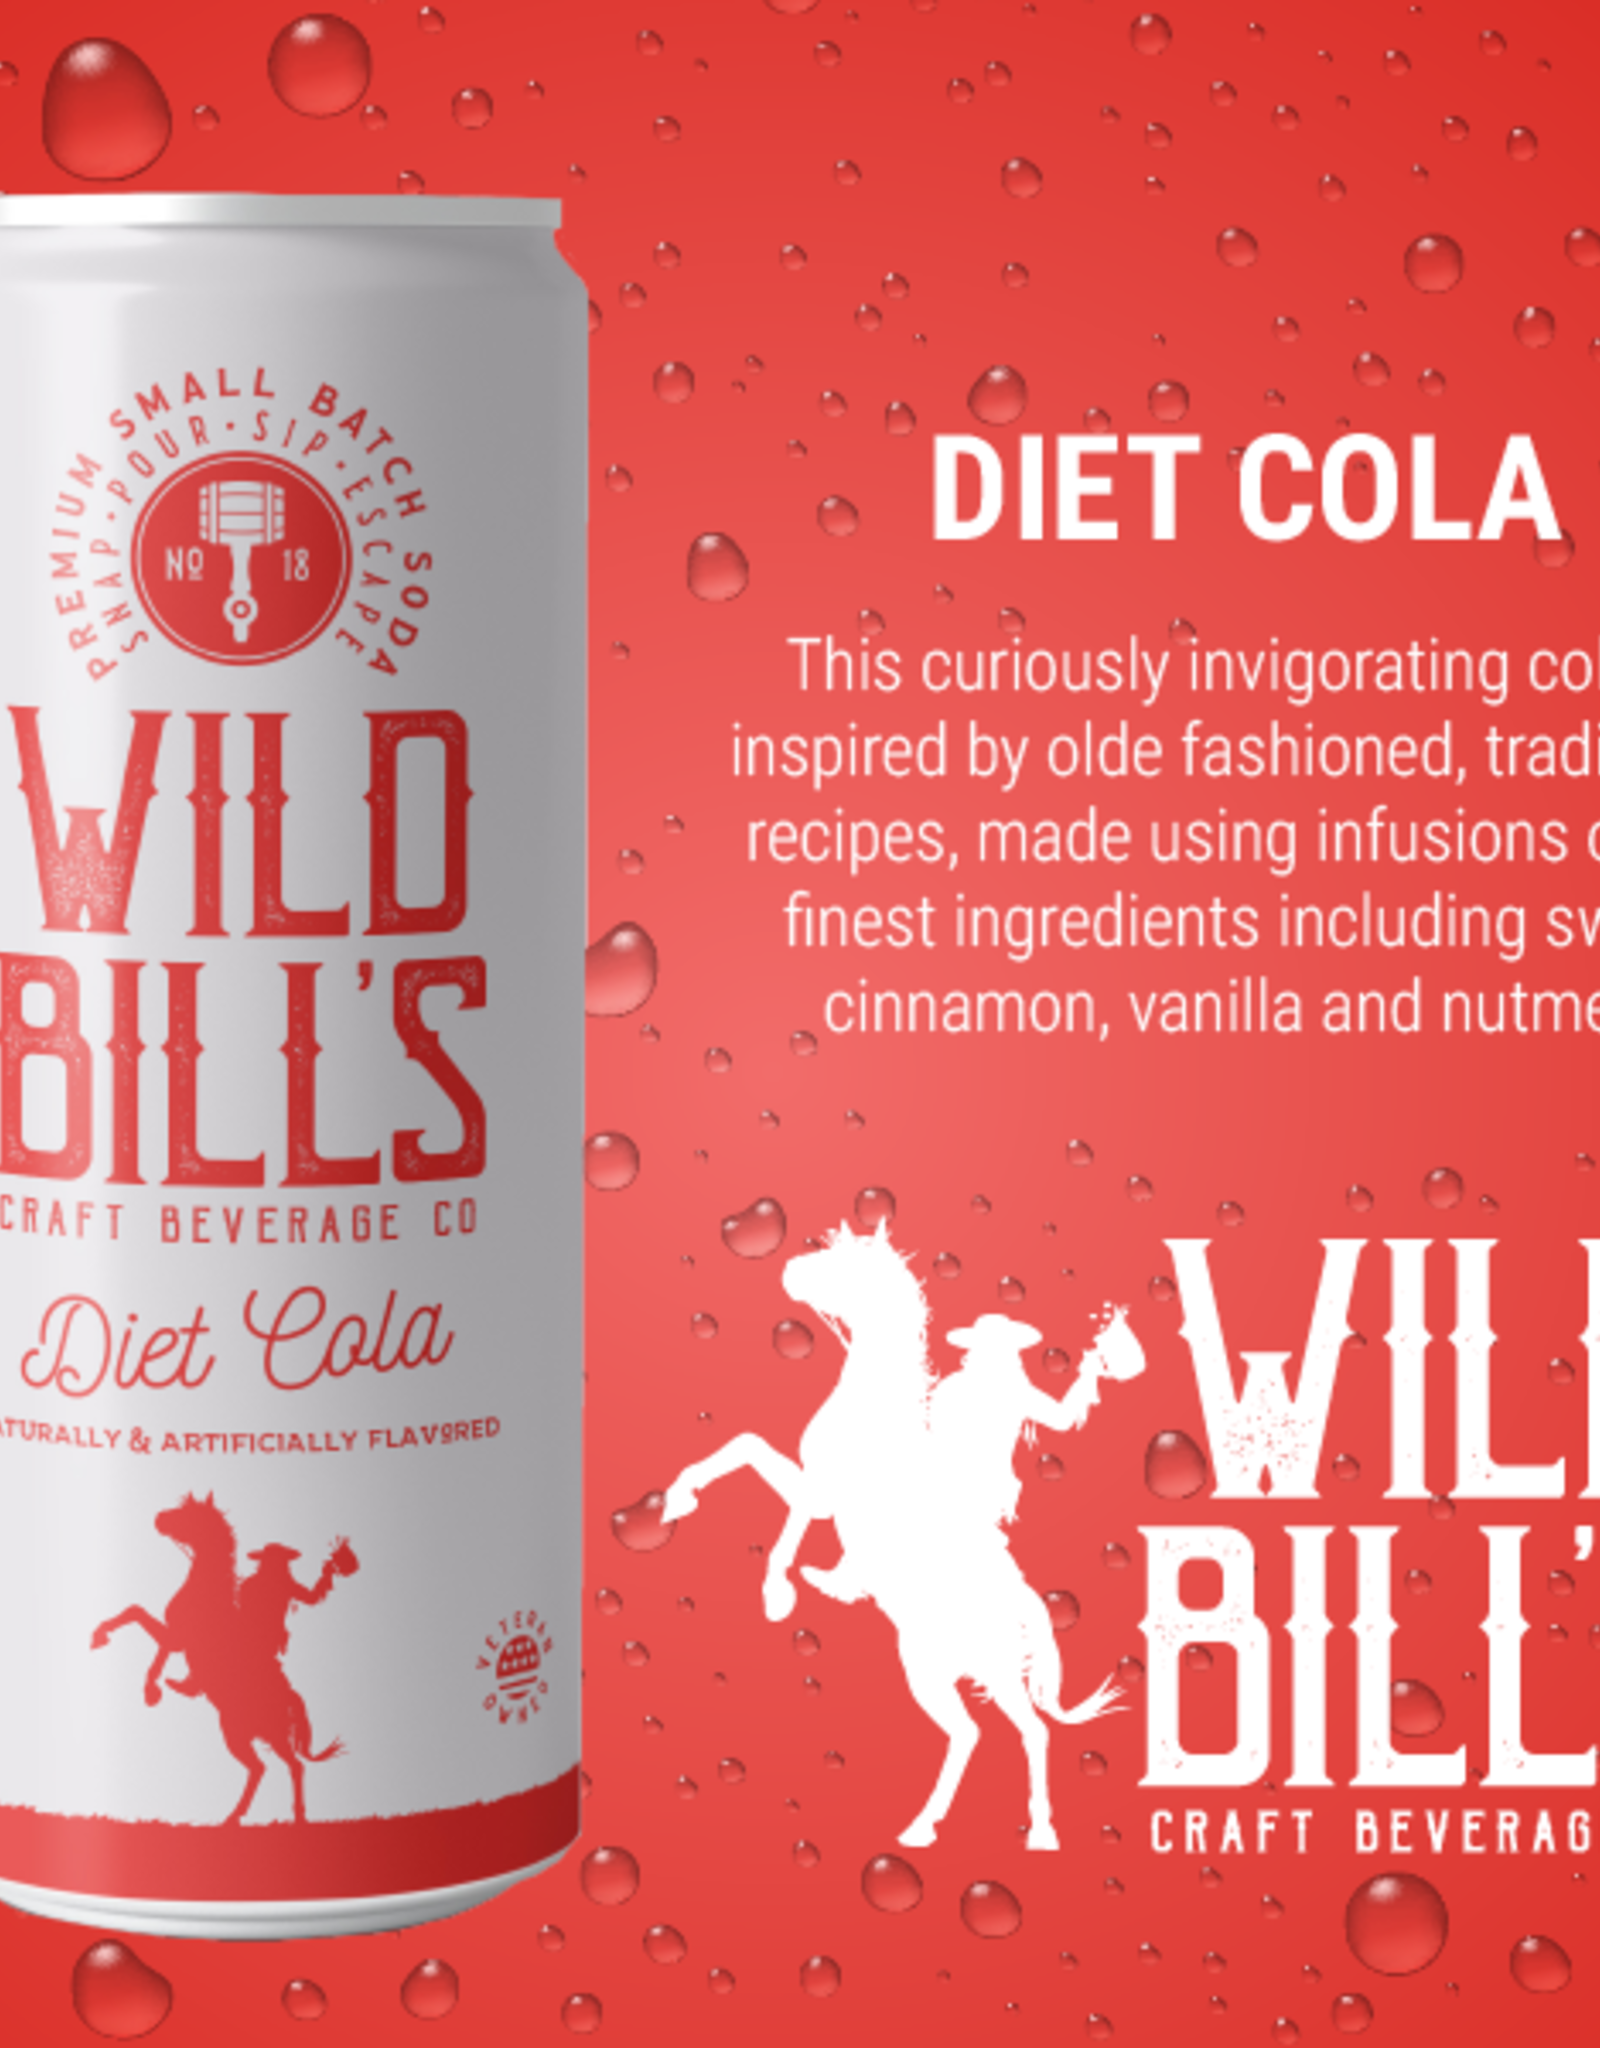 Wild Bill's Craft Beverage Co. Wild Bill's Diet Cola